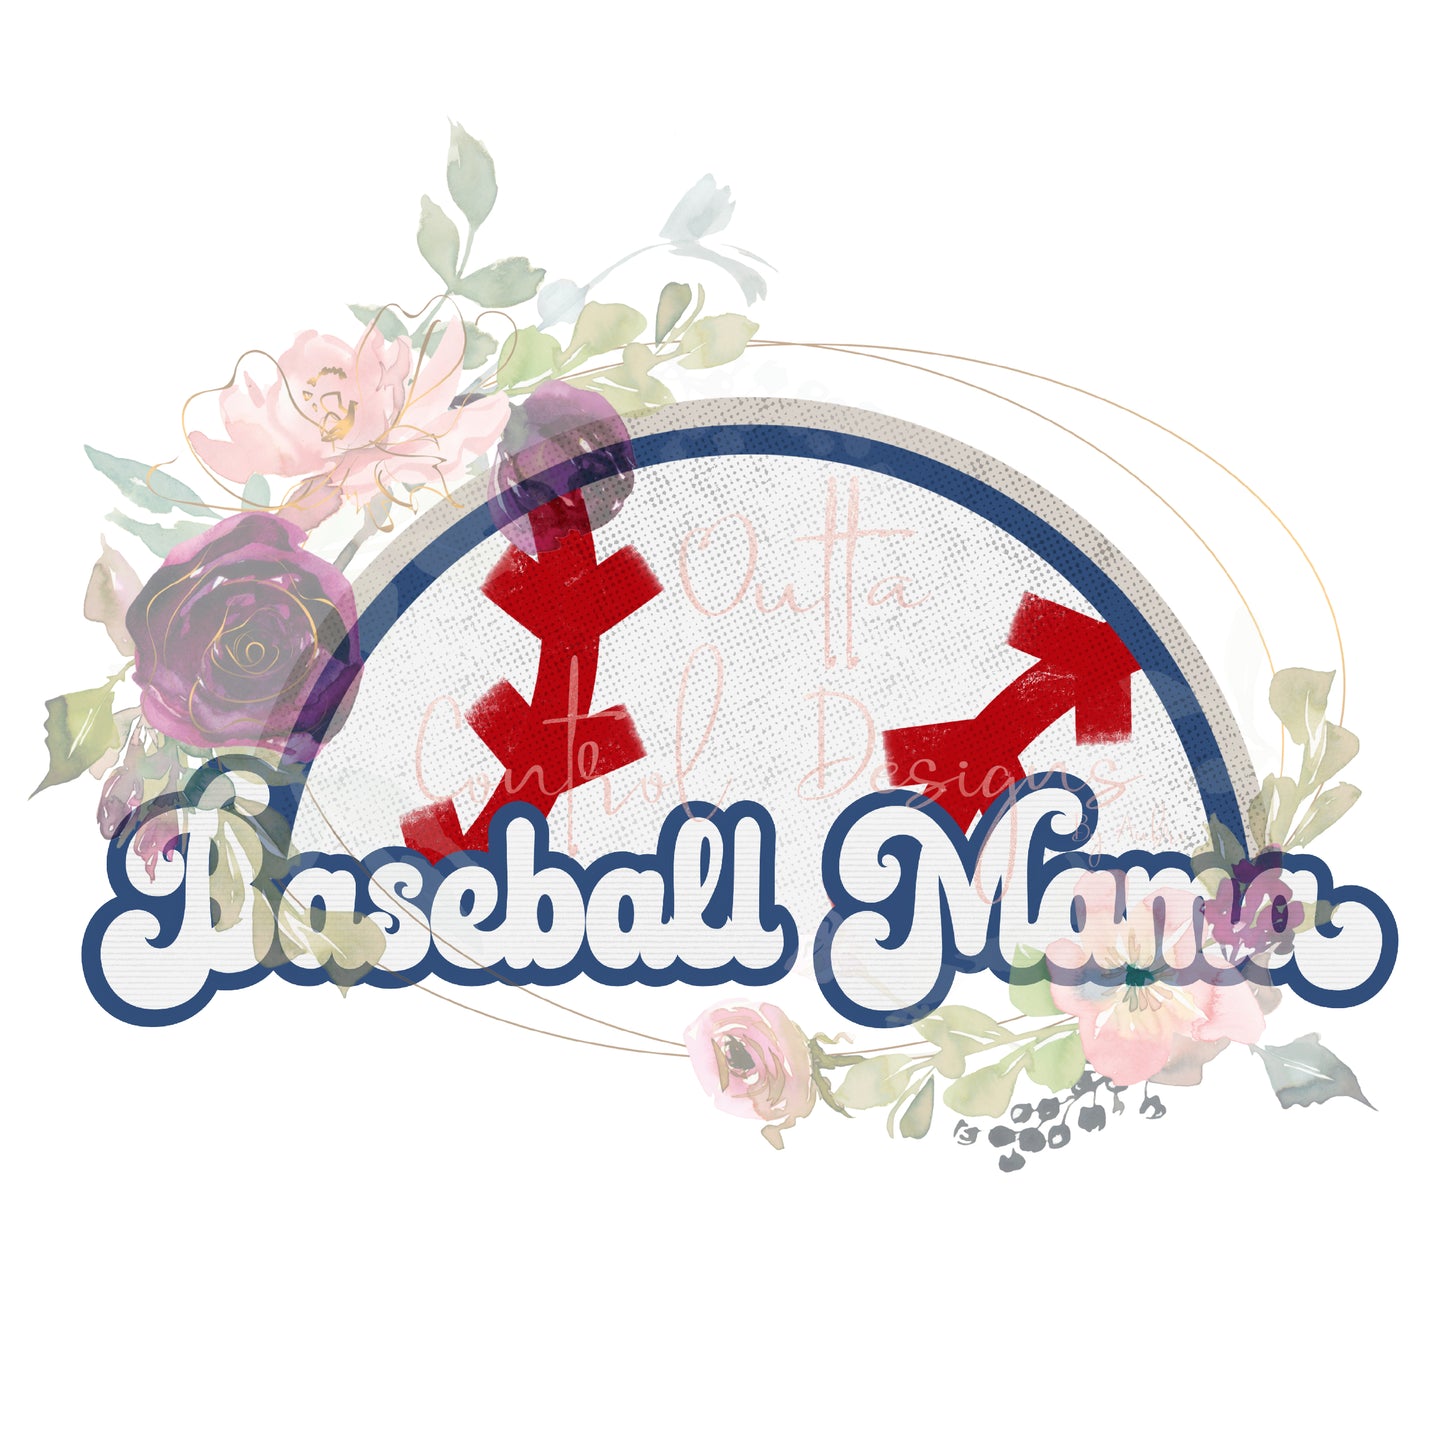 Baseball Mama Ready To Press Sublimation Transfer